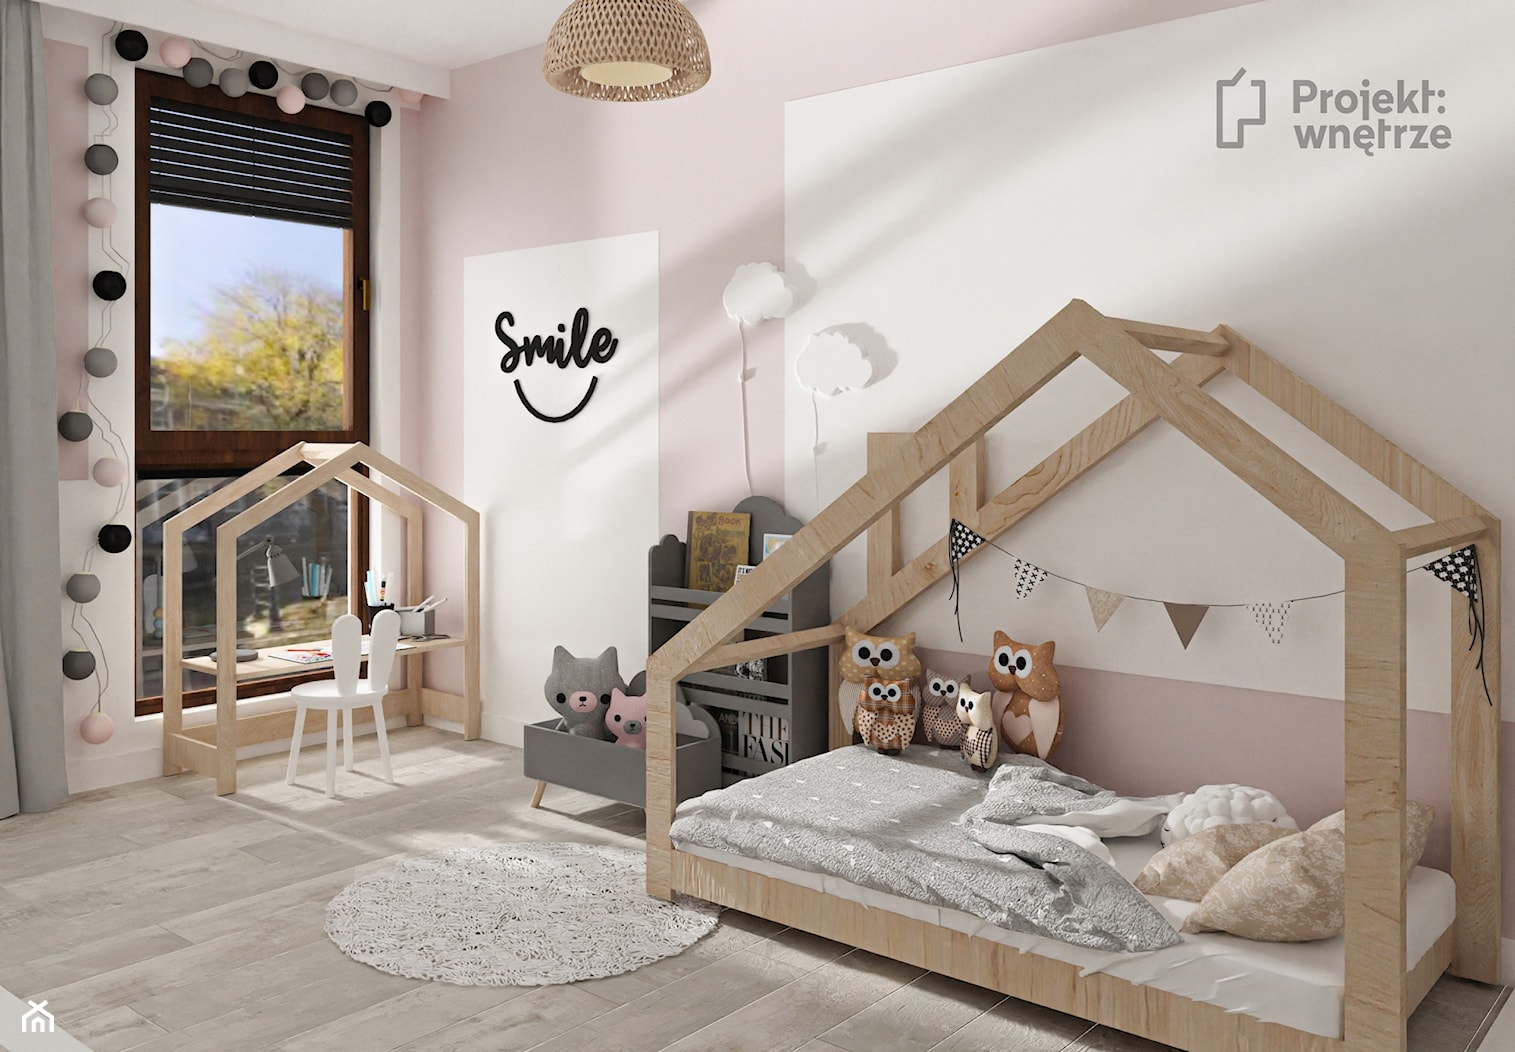 Pokój dla dziewczynki mały pokój dziecka styl skandynawski strefa zabaw dla dziecka spania nauki z biurkiem różowy szary PROJEKT: WNĘTRZE projektwnetrze.com.pl - zdjęcie od PROJEKT: WNĘTRZE - Homebook